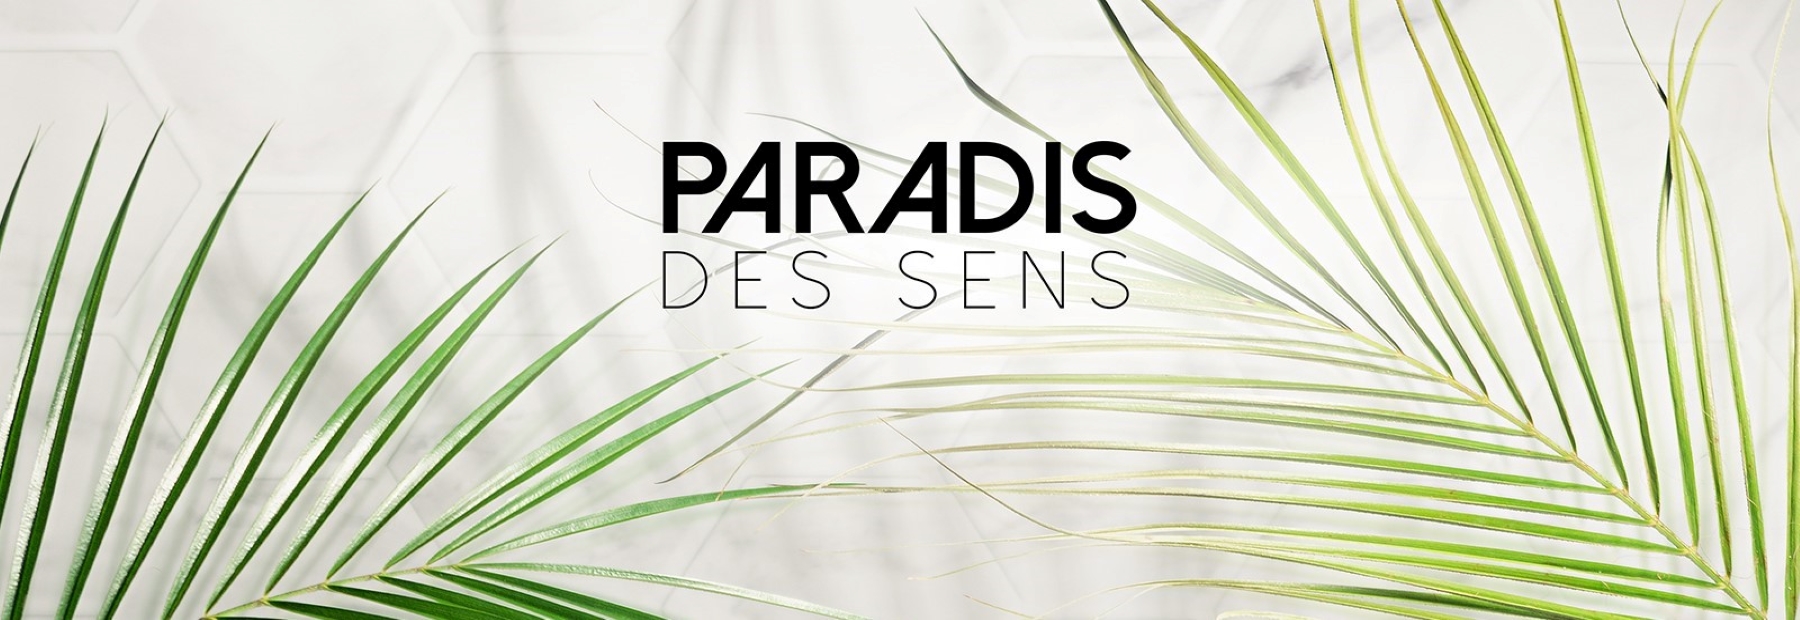 PARADIS DES SENS